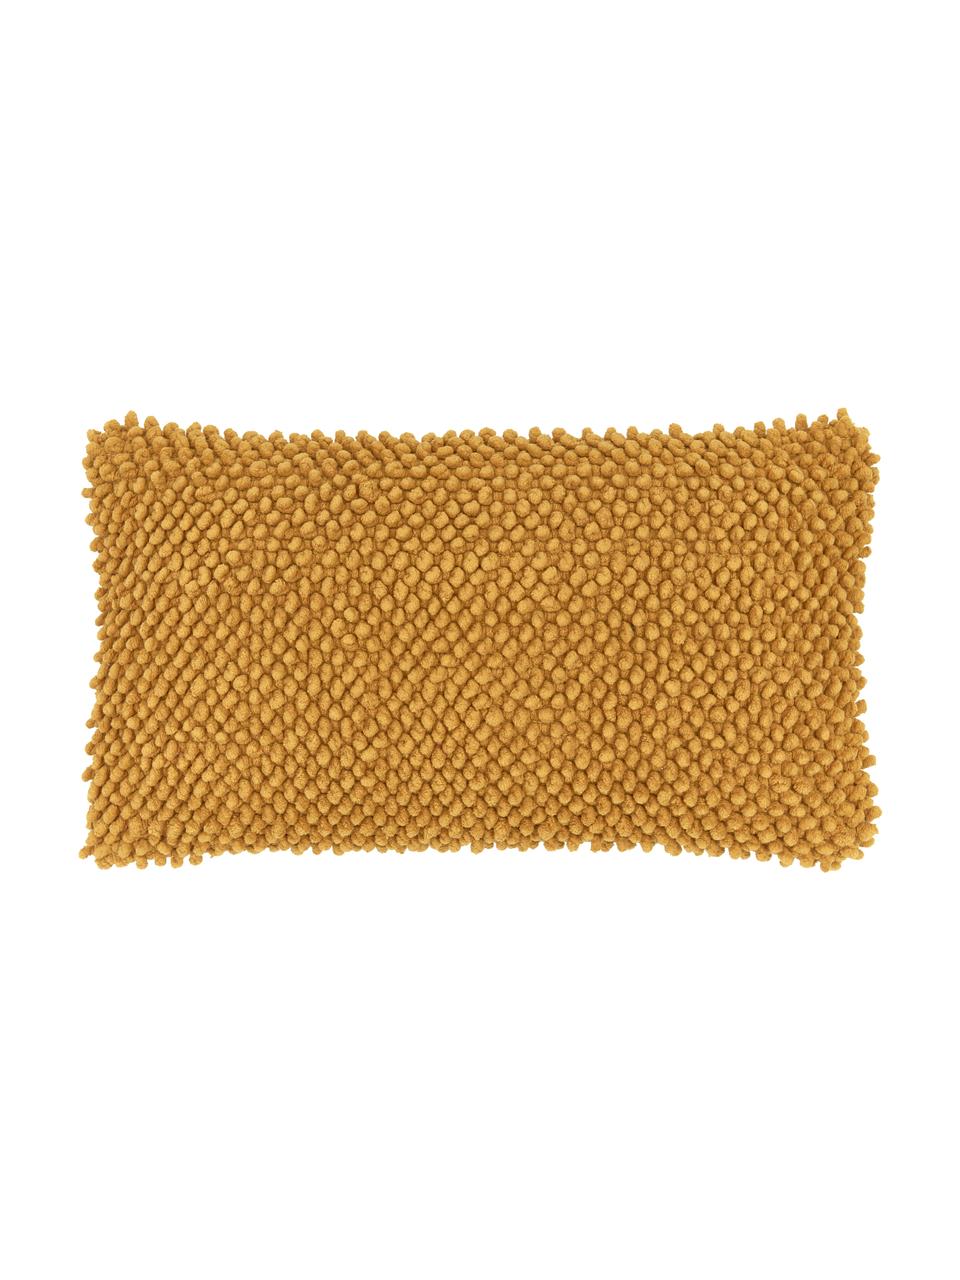 Kissenhülle Indi mit strukturierter Oberfläche in Senfgelb, 100% Baumwolle, Senfgelb, 30 x 50 cm